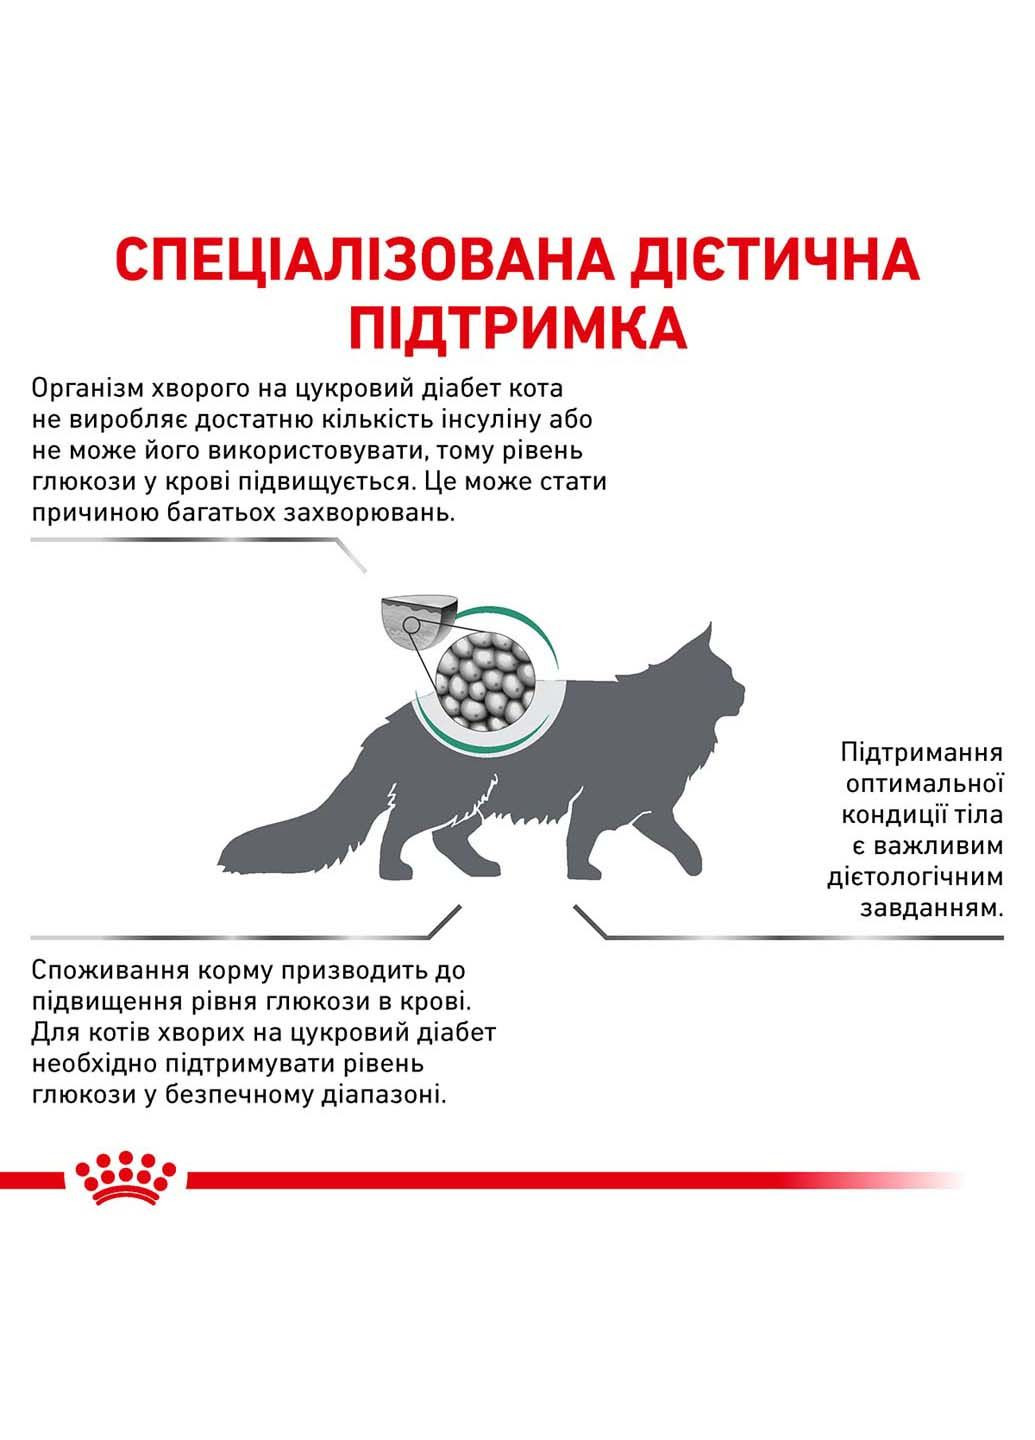 Сухий корм для дорослих кішок Diabetic Cat 1.5 кг Royal Canin (286472476)